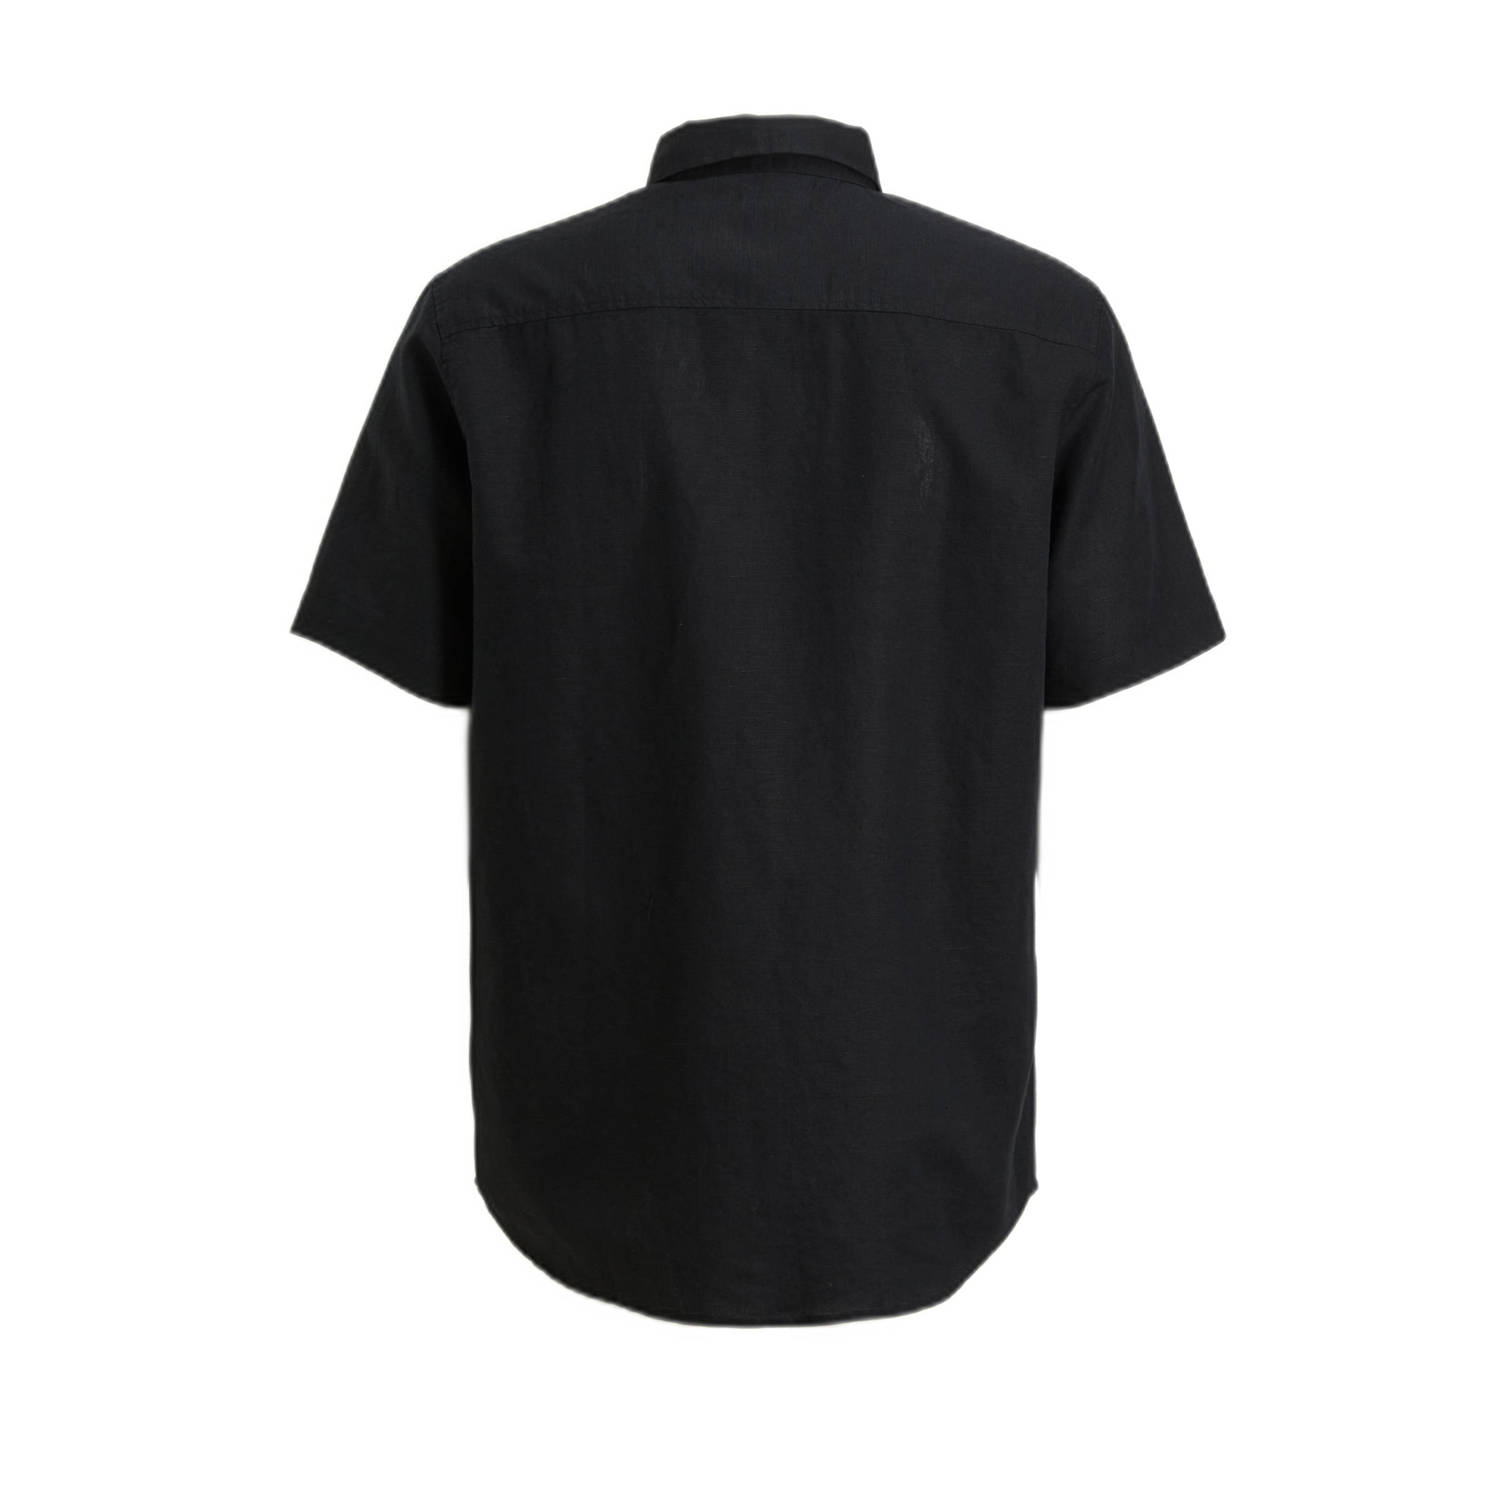 Mexx regular fit overhemd BRANDON zwart